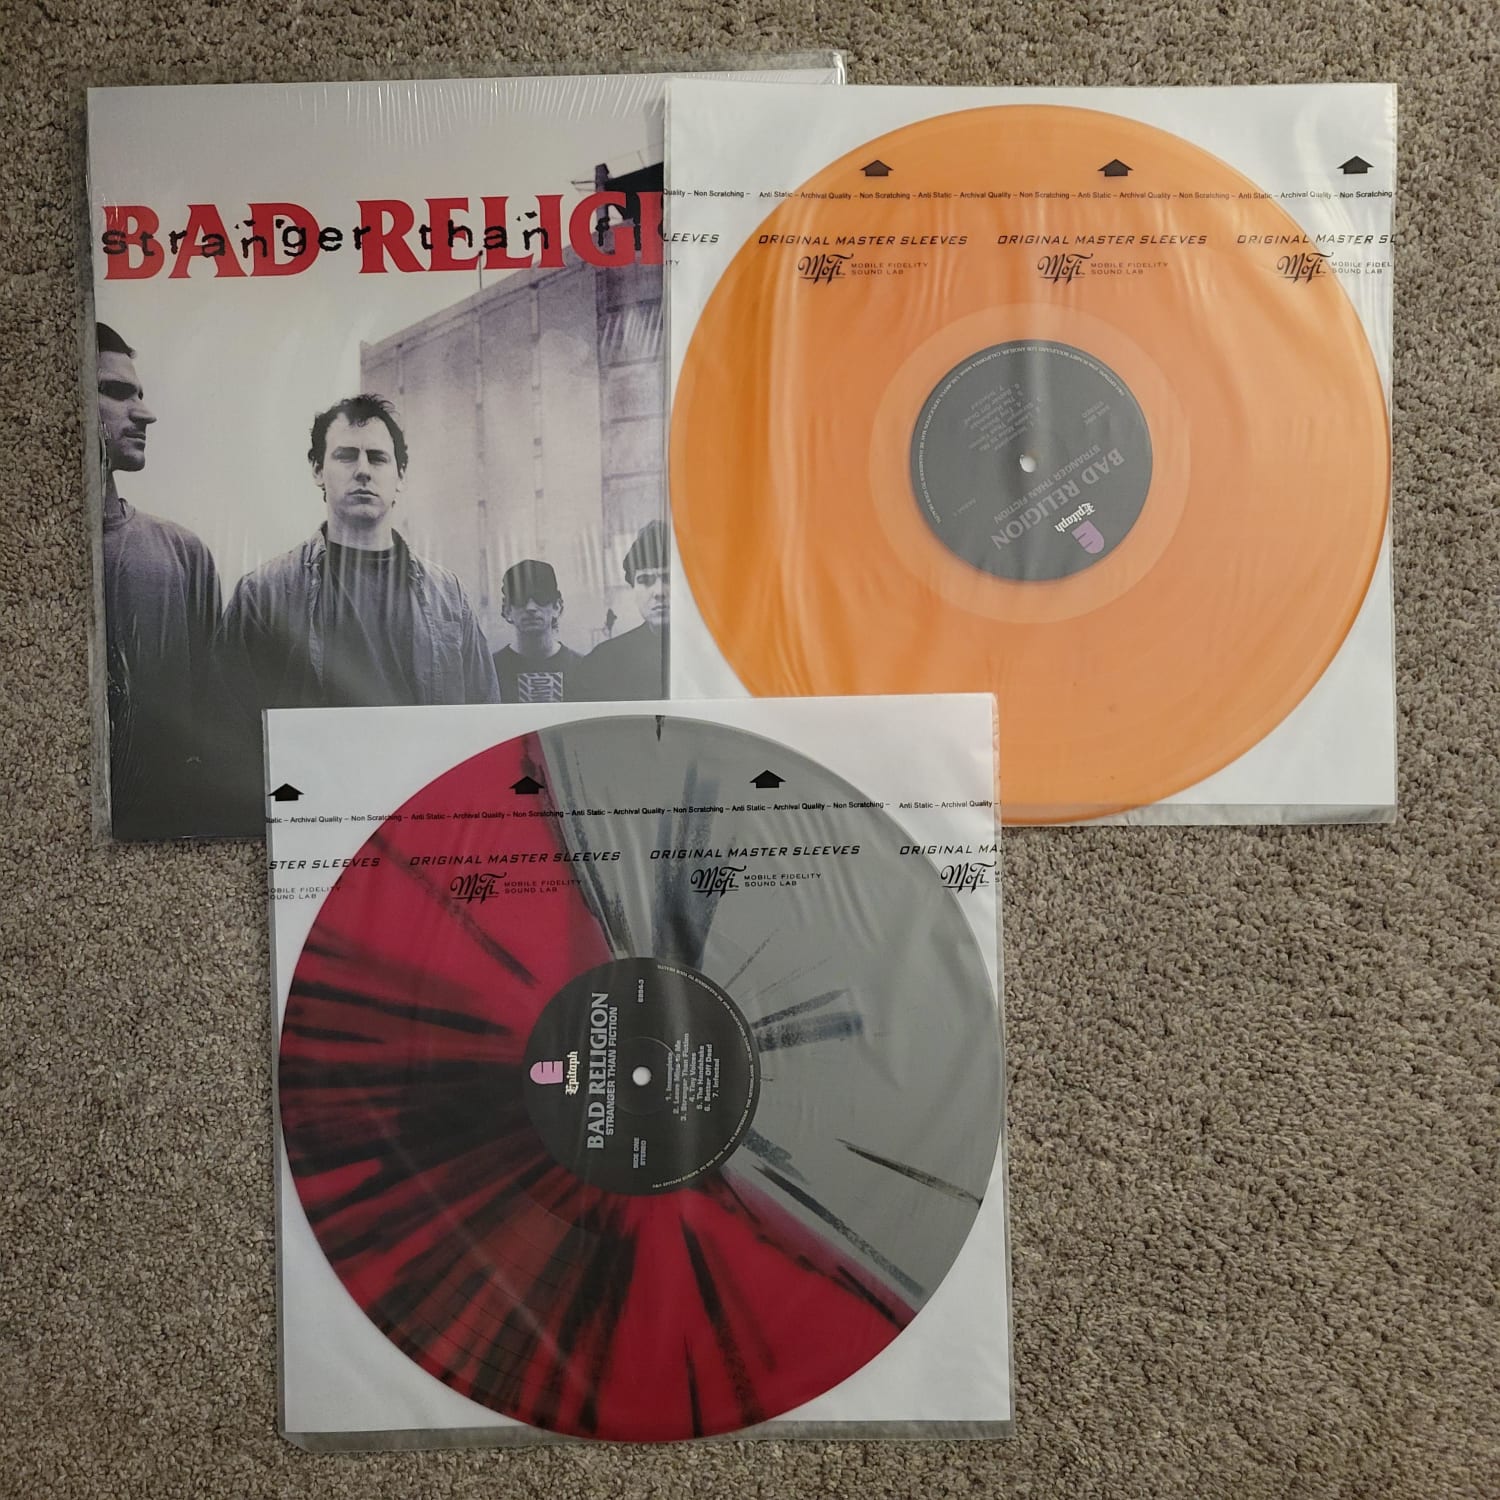 Bad Religion - Stranger Than Fiction reissues